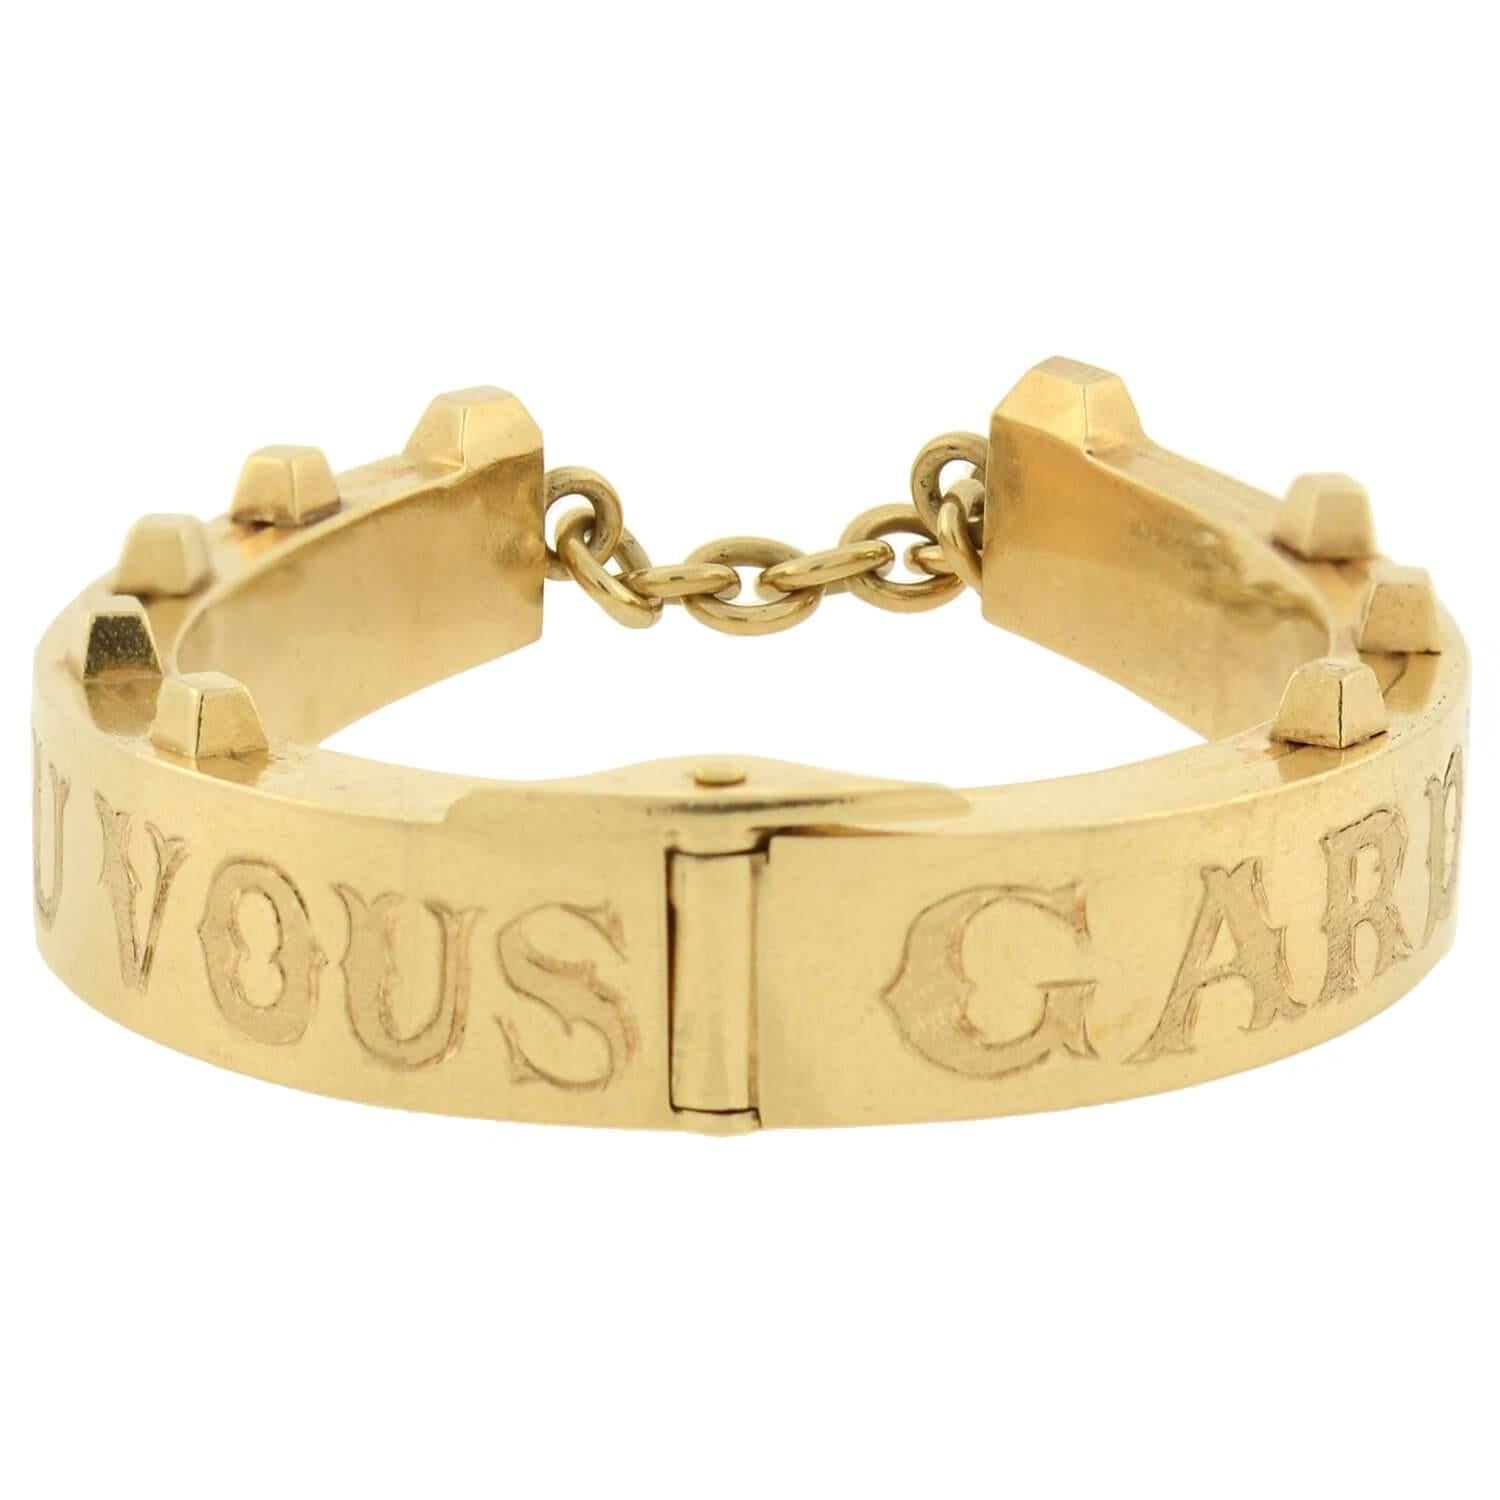 horseshoe cuff bracelet